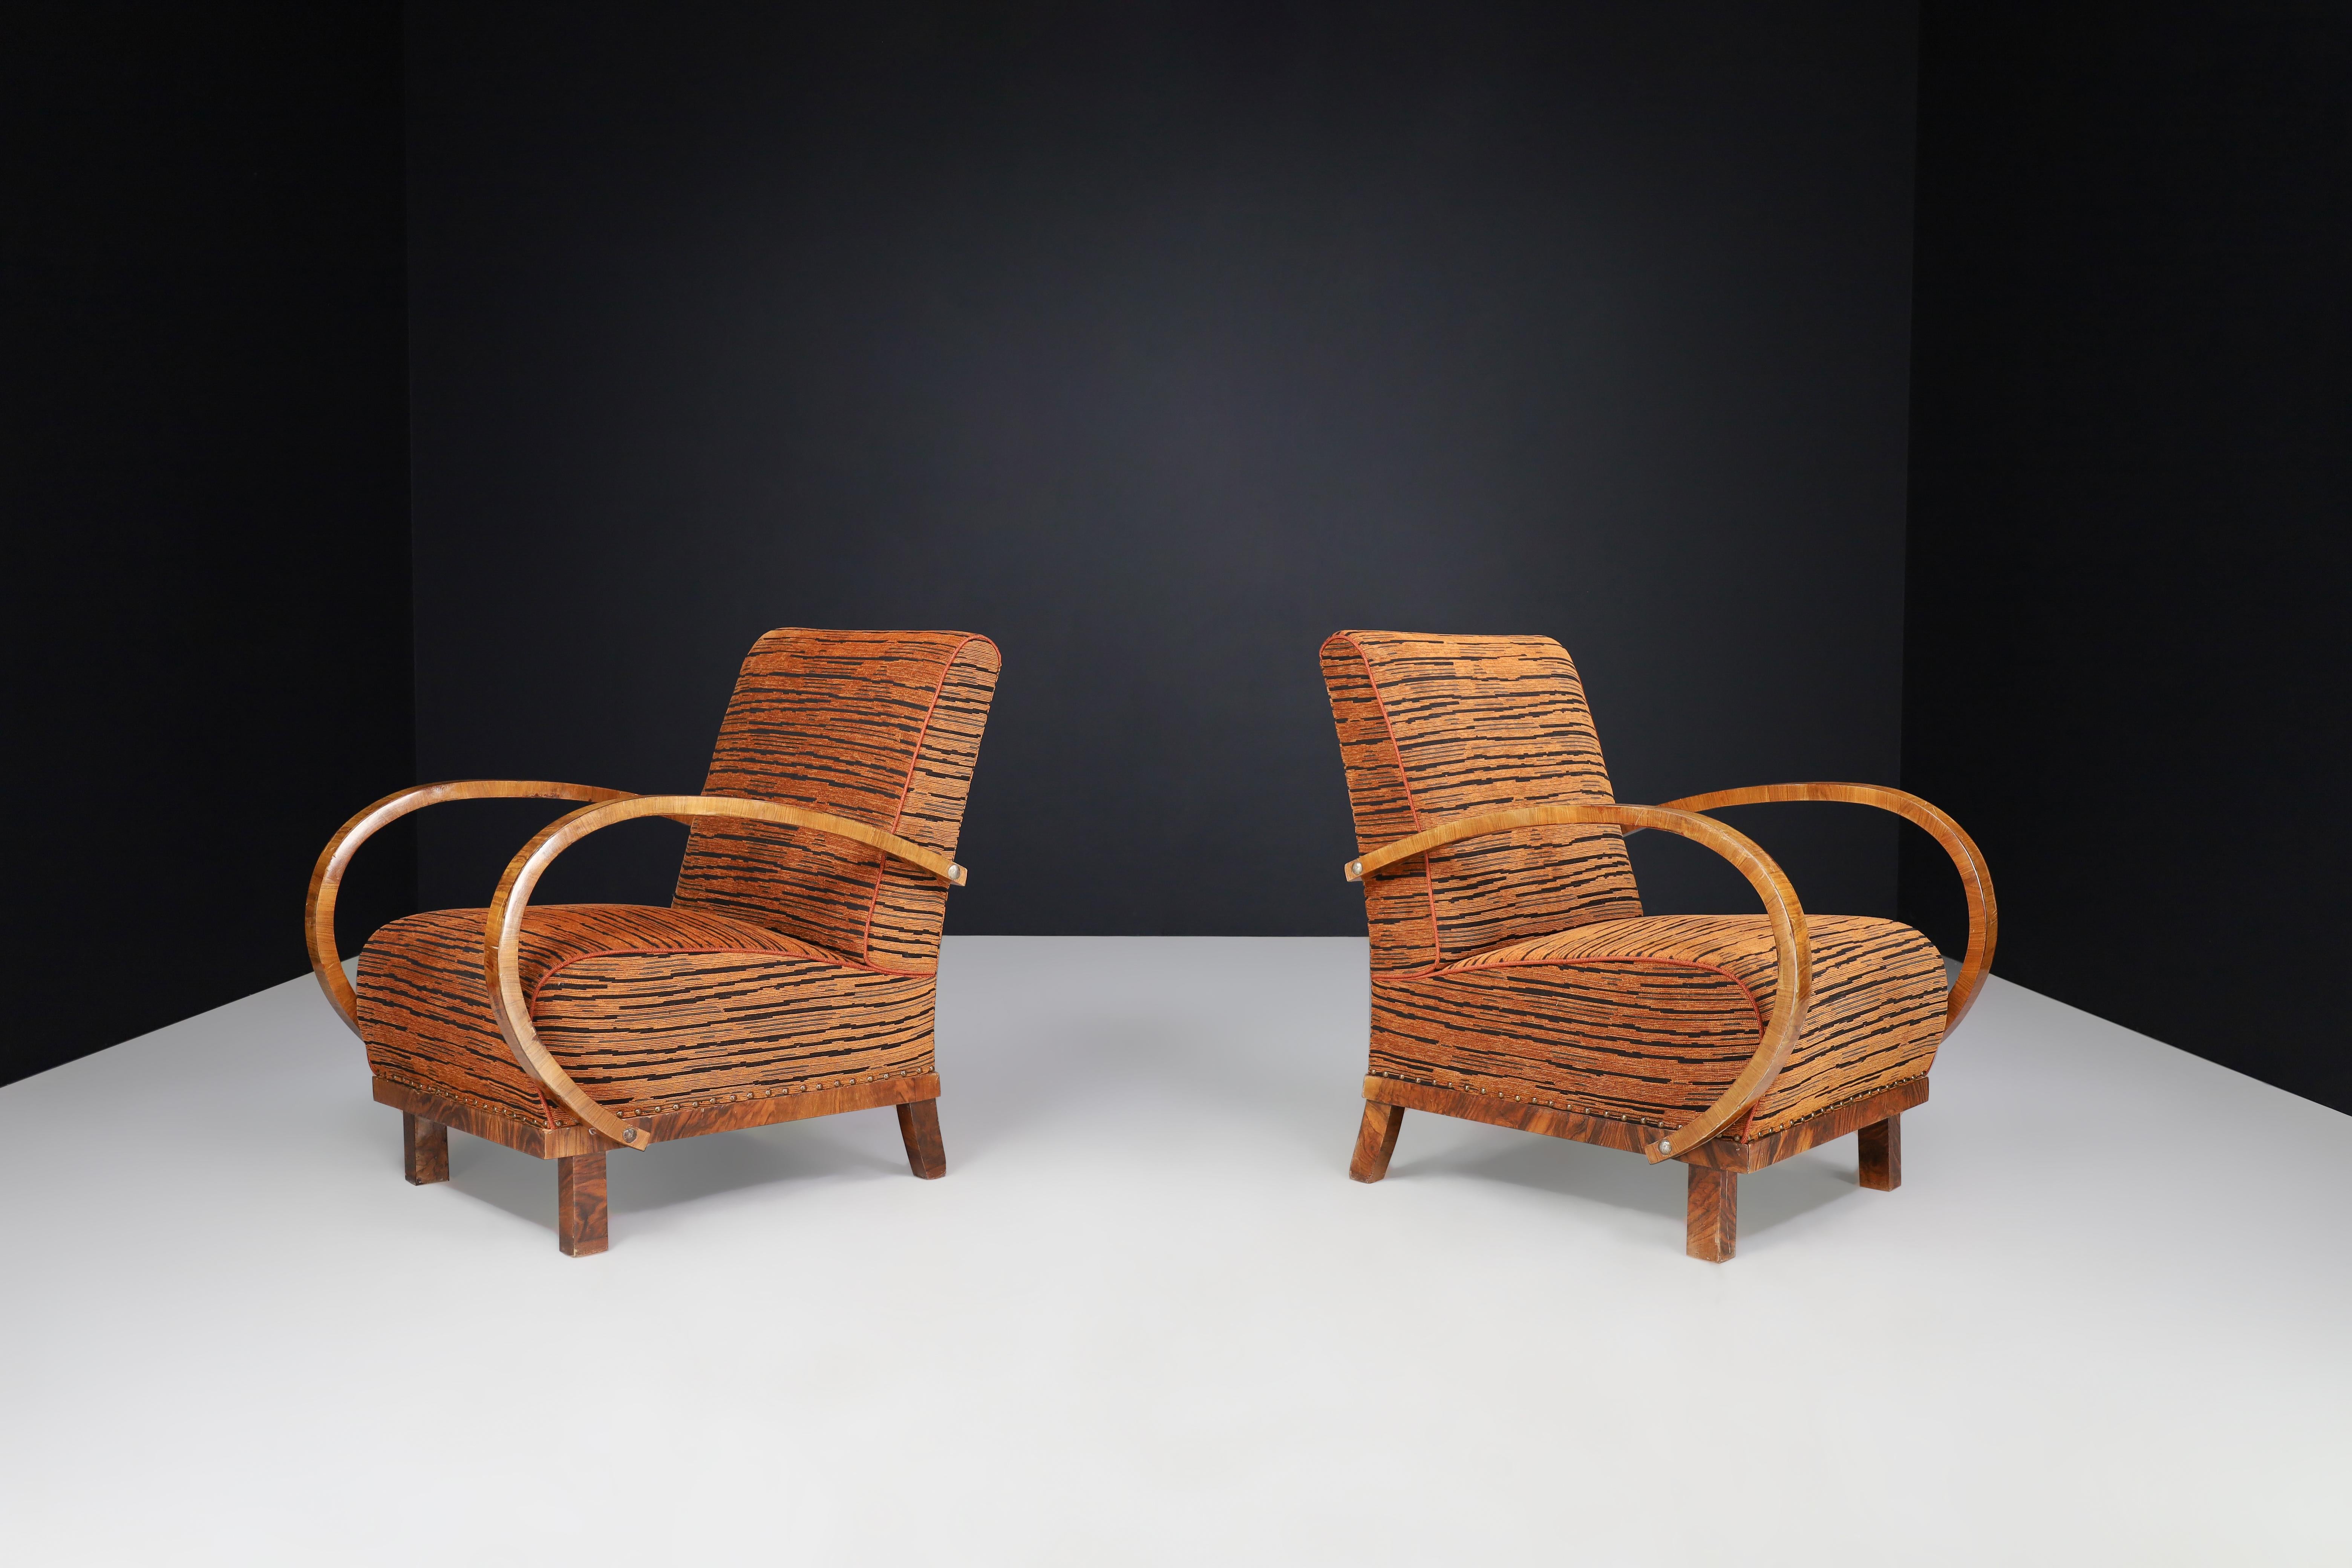 Art Deco Sessel in Nussbaum in neuer Polsterung, Österreich 1930er Jahre

Es handelt sich um zwei Art-Déco-Sessel oder Loungesessel aus Nussbaumholz, die mit einem neuen Stoff bezogen sind. Sie wurden in den 1930er Jahren in Österreich hergestellt.